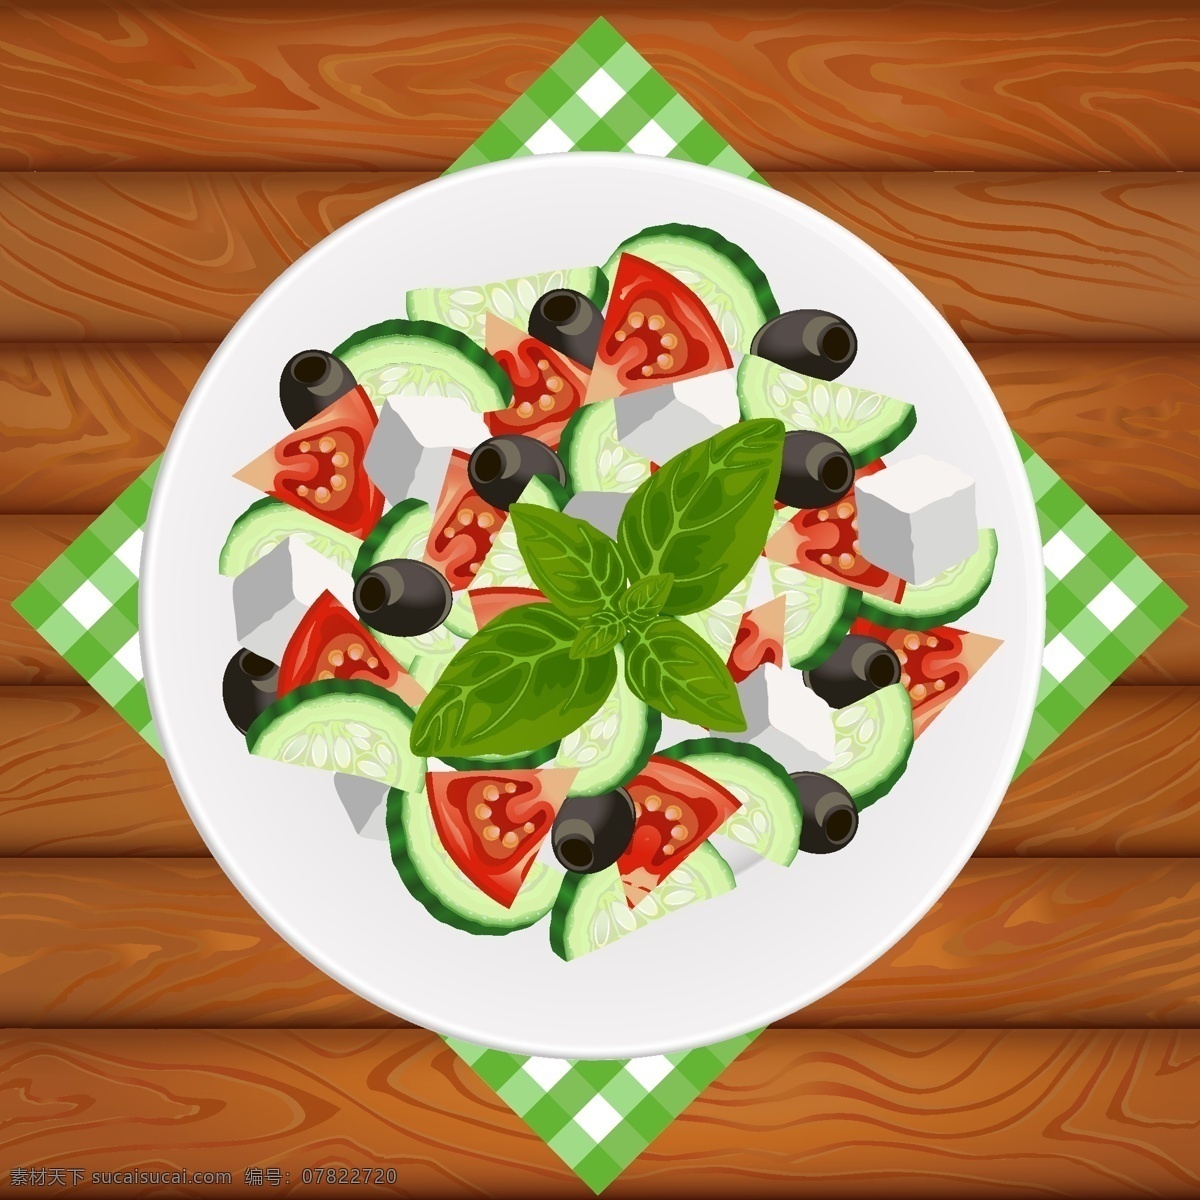 健康 卡通 食物 矢量 绿色 装饰 盘子 矢量素材 设计元素 装饰图案